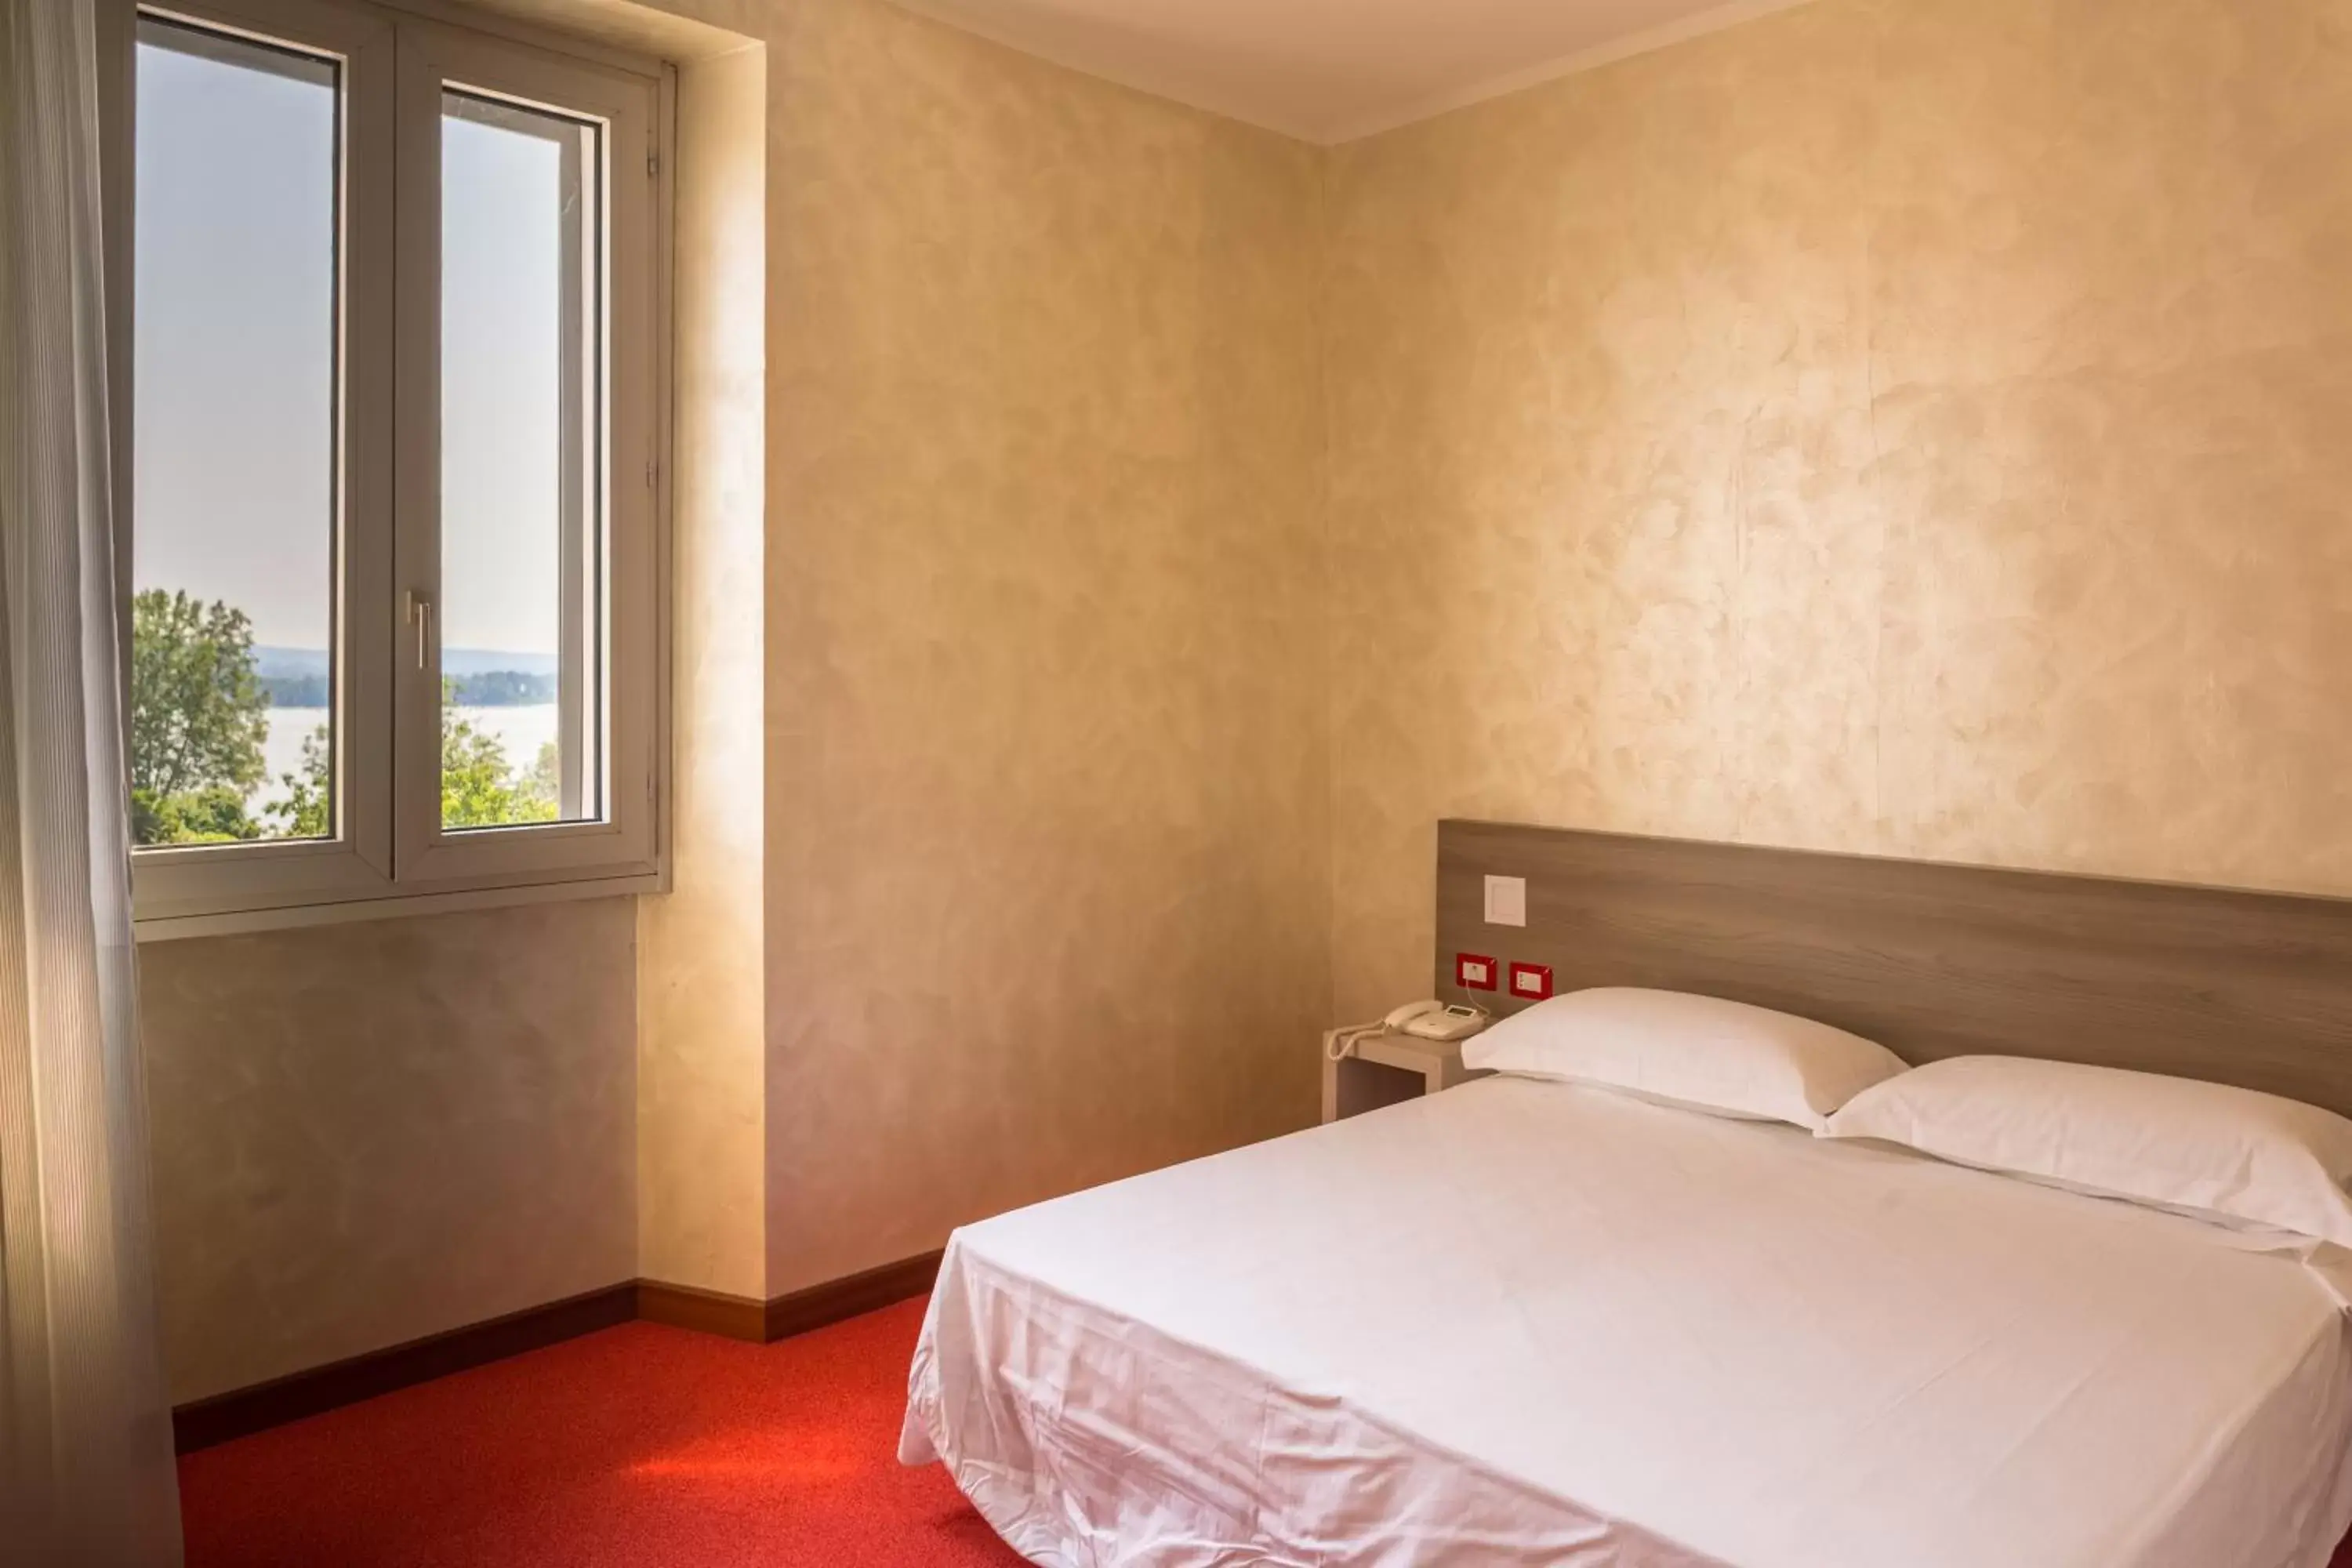 Bed in Hotel Italia dormelletto